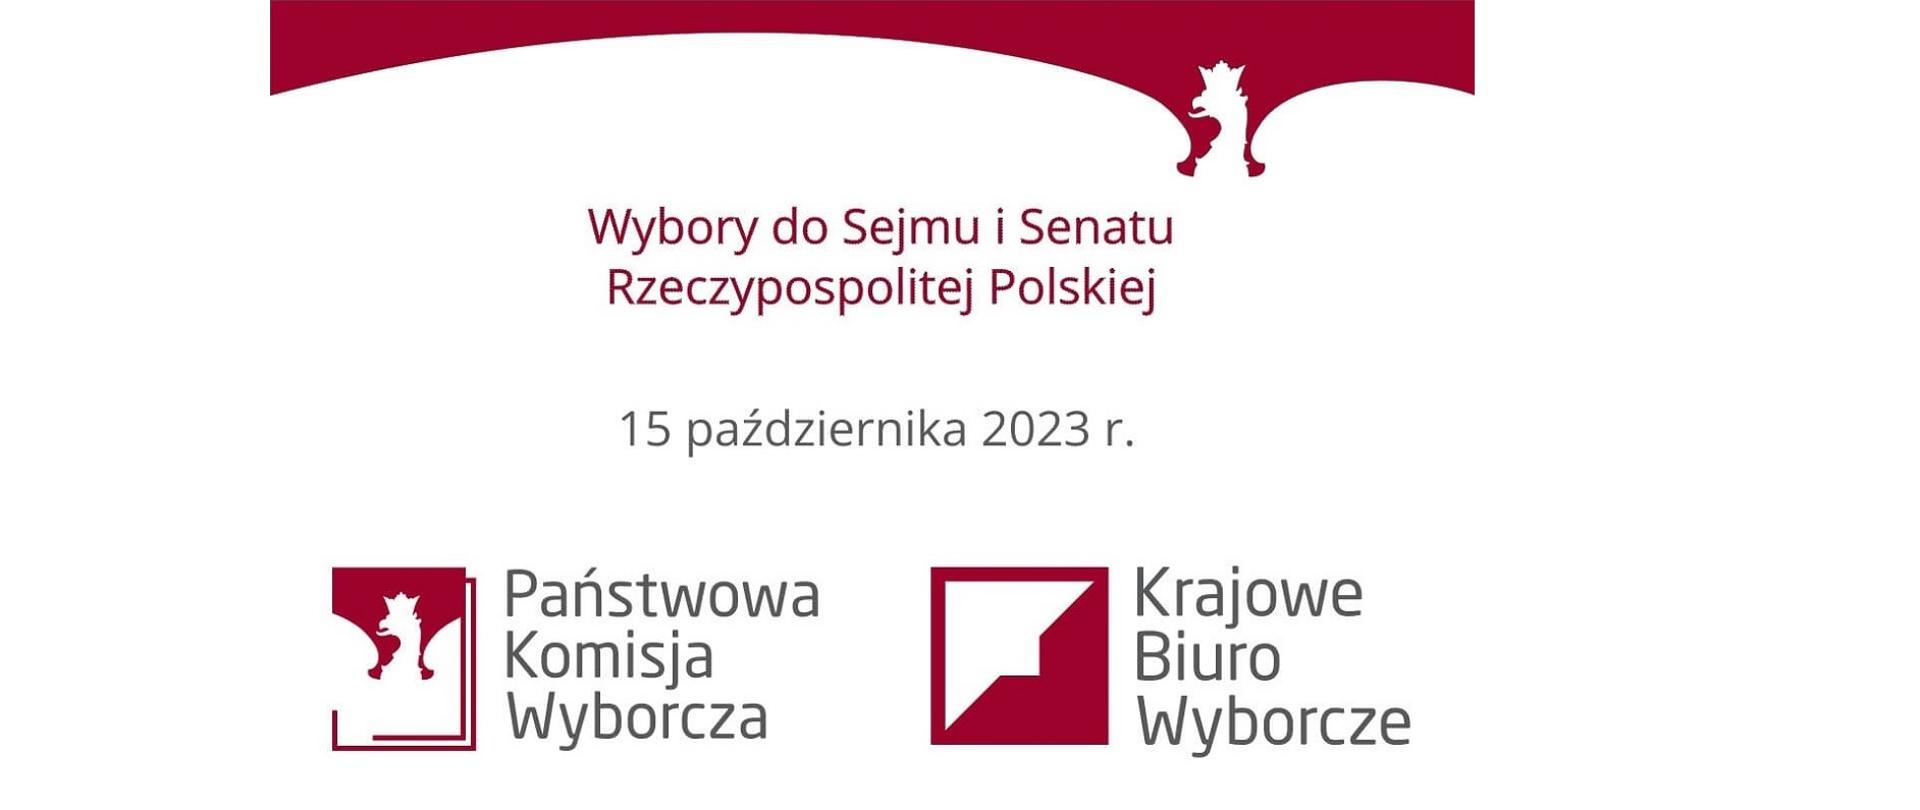 Wybory do Sejmu i Senatu Rzeczypospolitej Polskiej 15 października 2023 roku. Państwowa Komisja Wyborcza. Krajowe Biuro Wyborcze